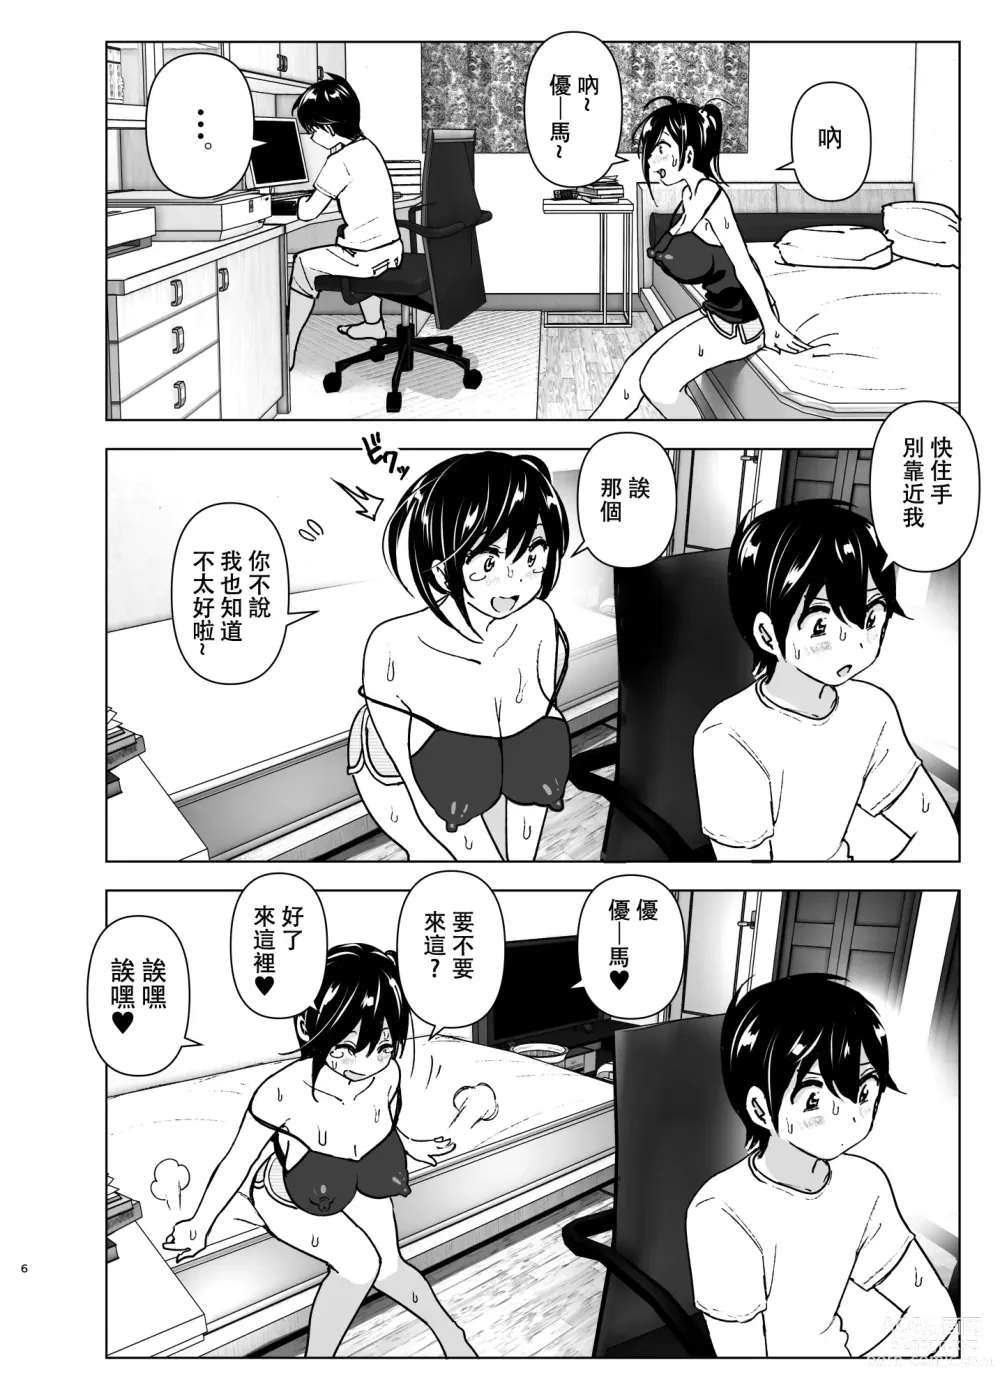 Page 5 of doujinshi 姐姐與傾聽抱怨的弟弟的故事 (decensored)